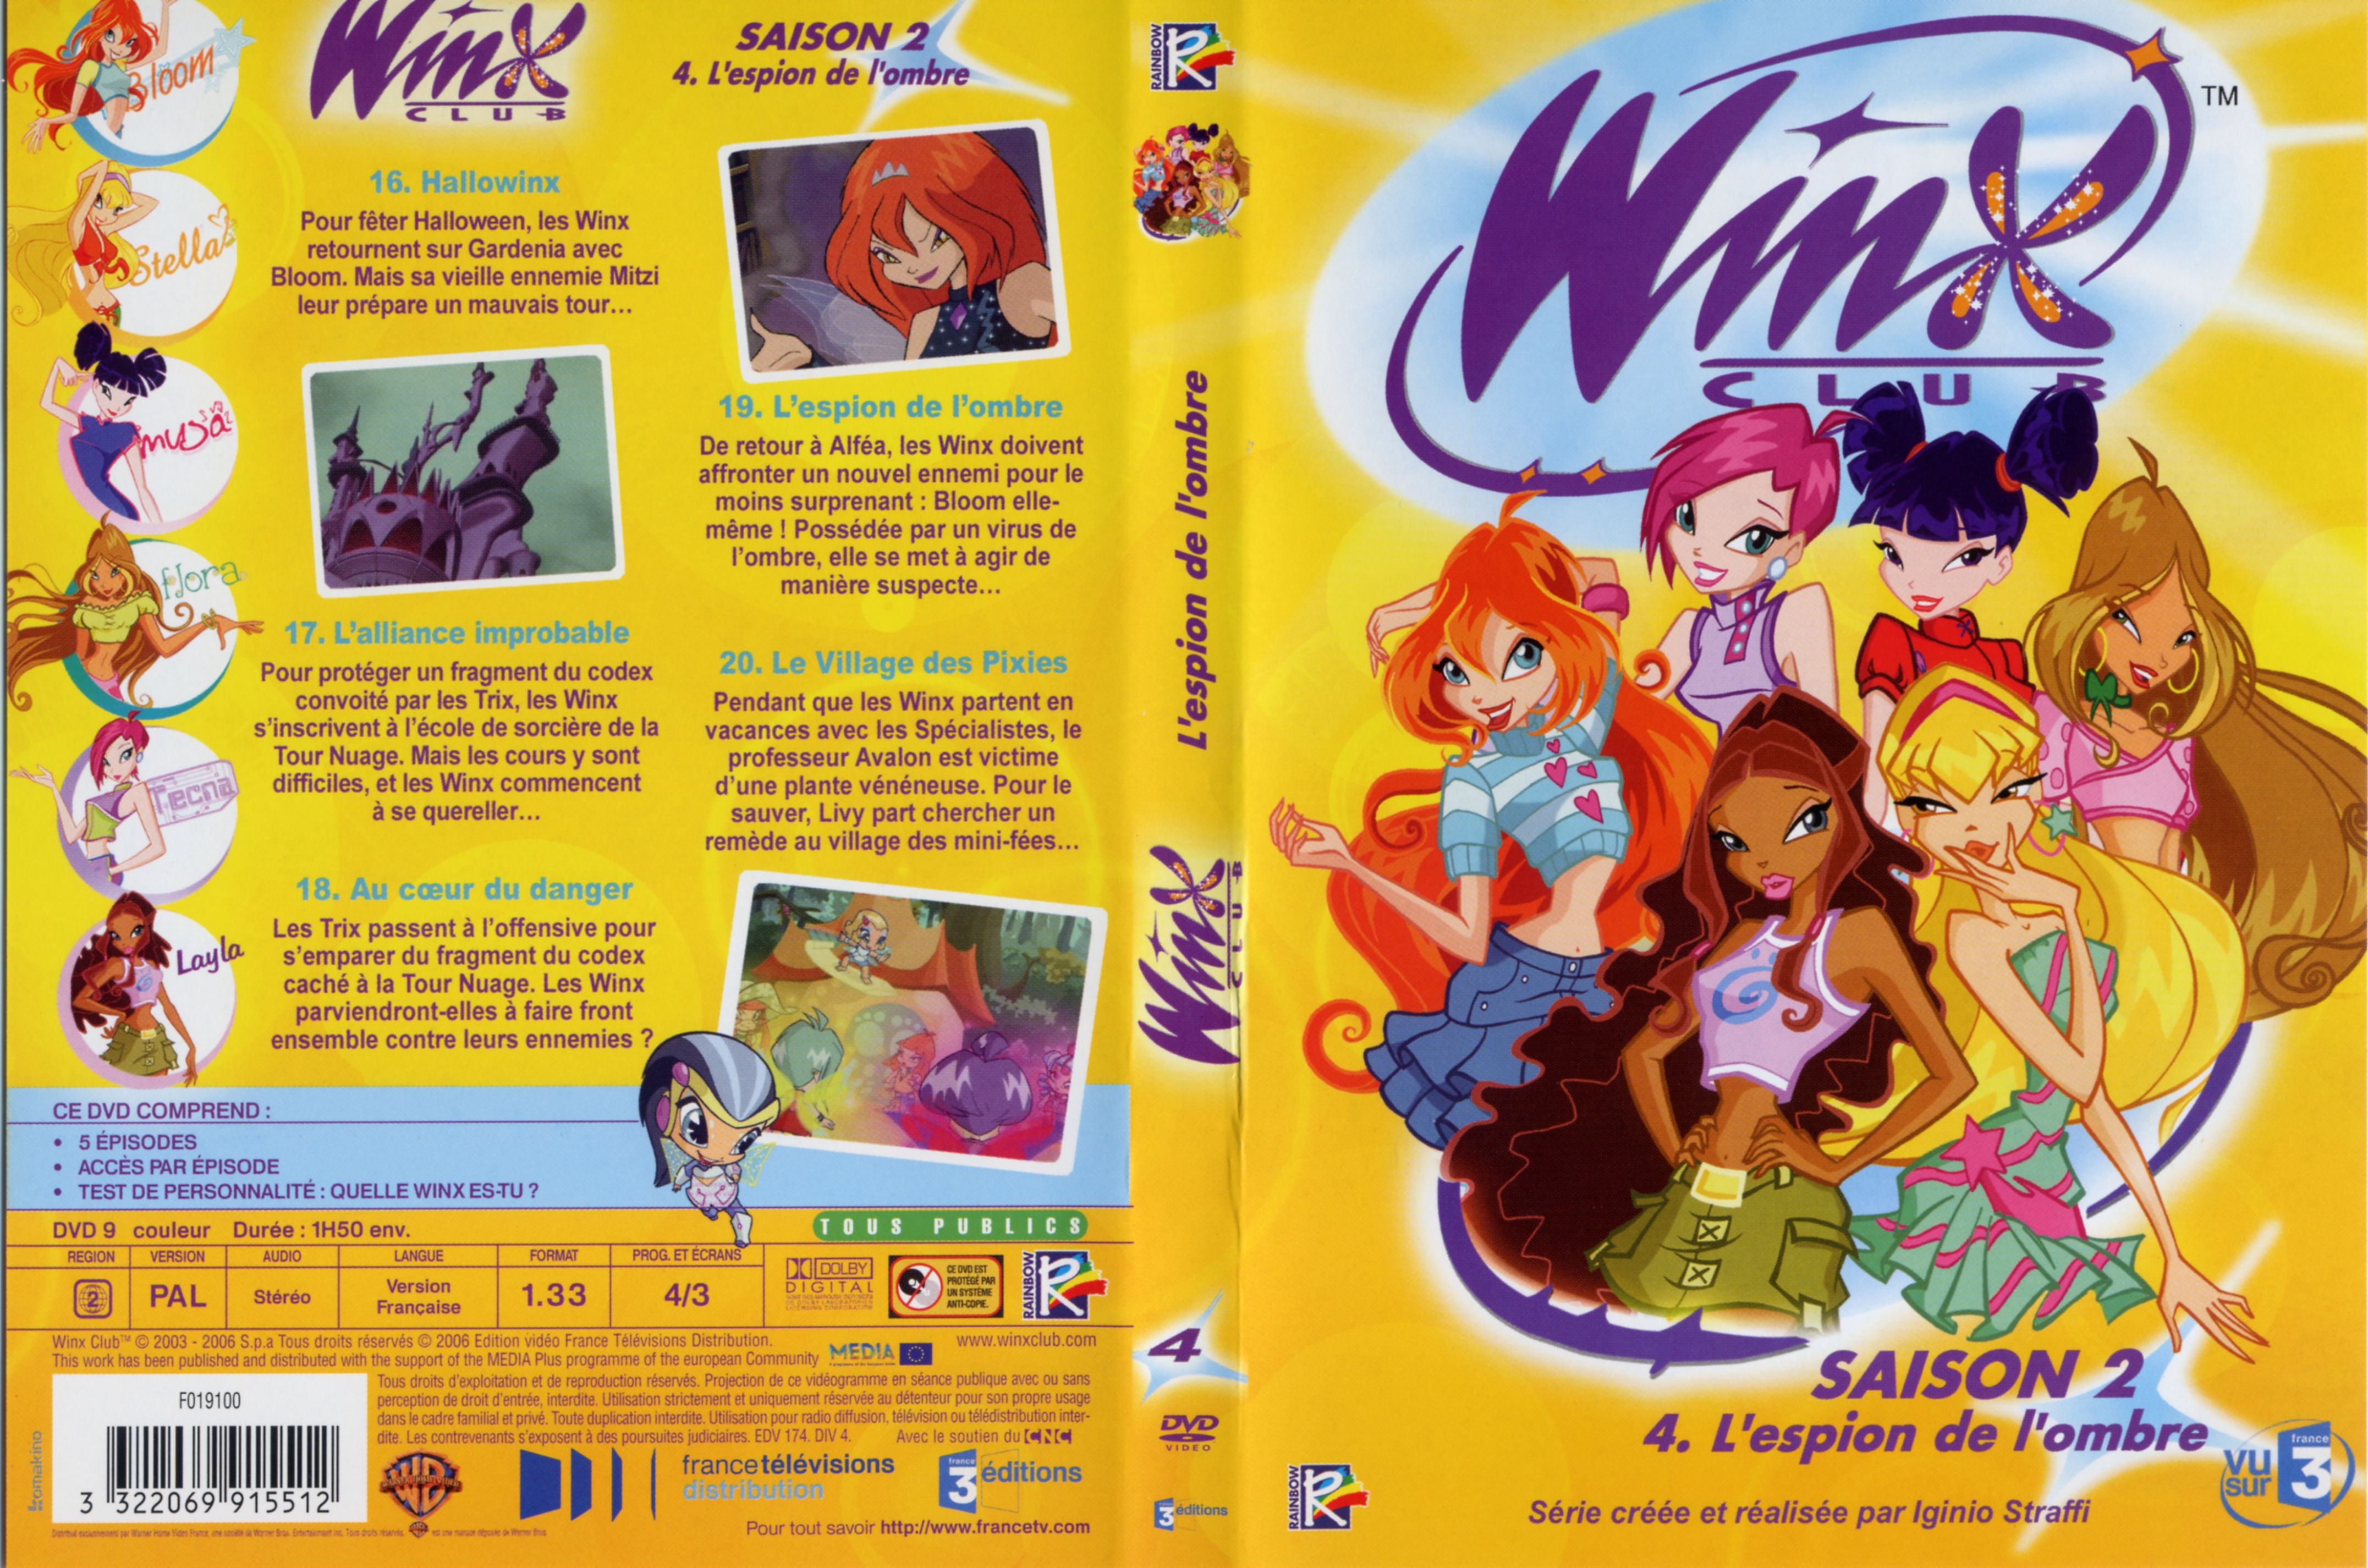 Jaquette DVD Winx club saison 2 vol 4